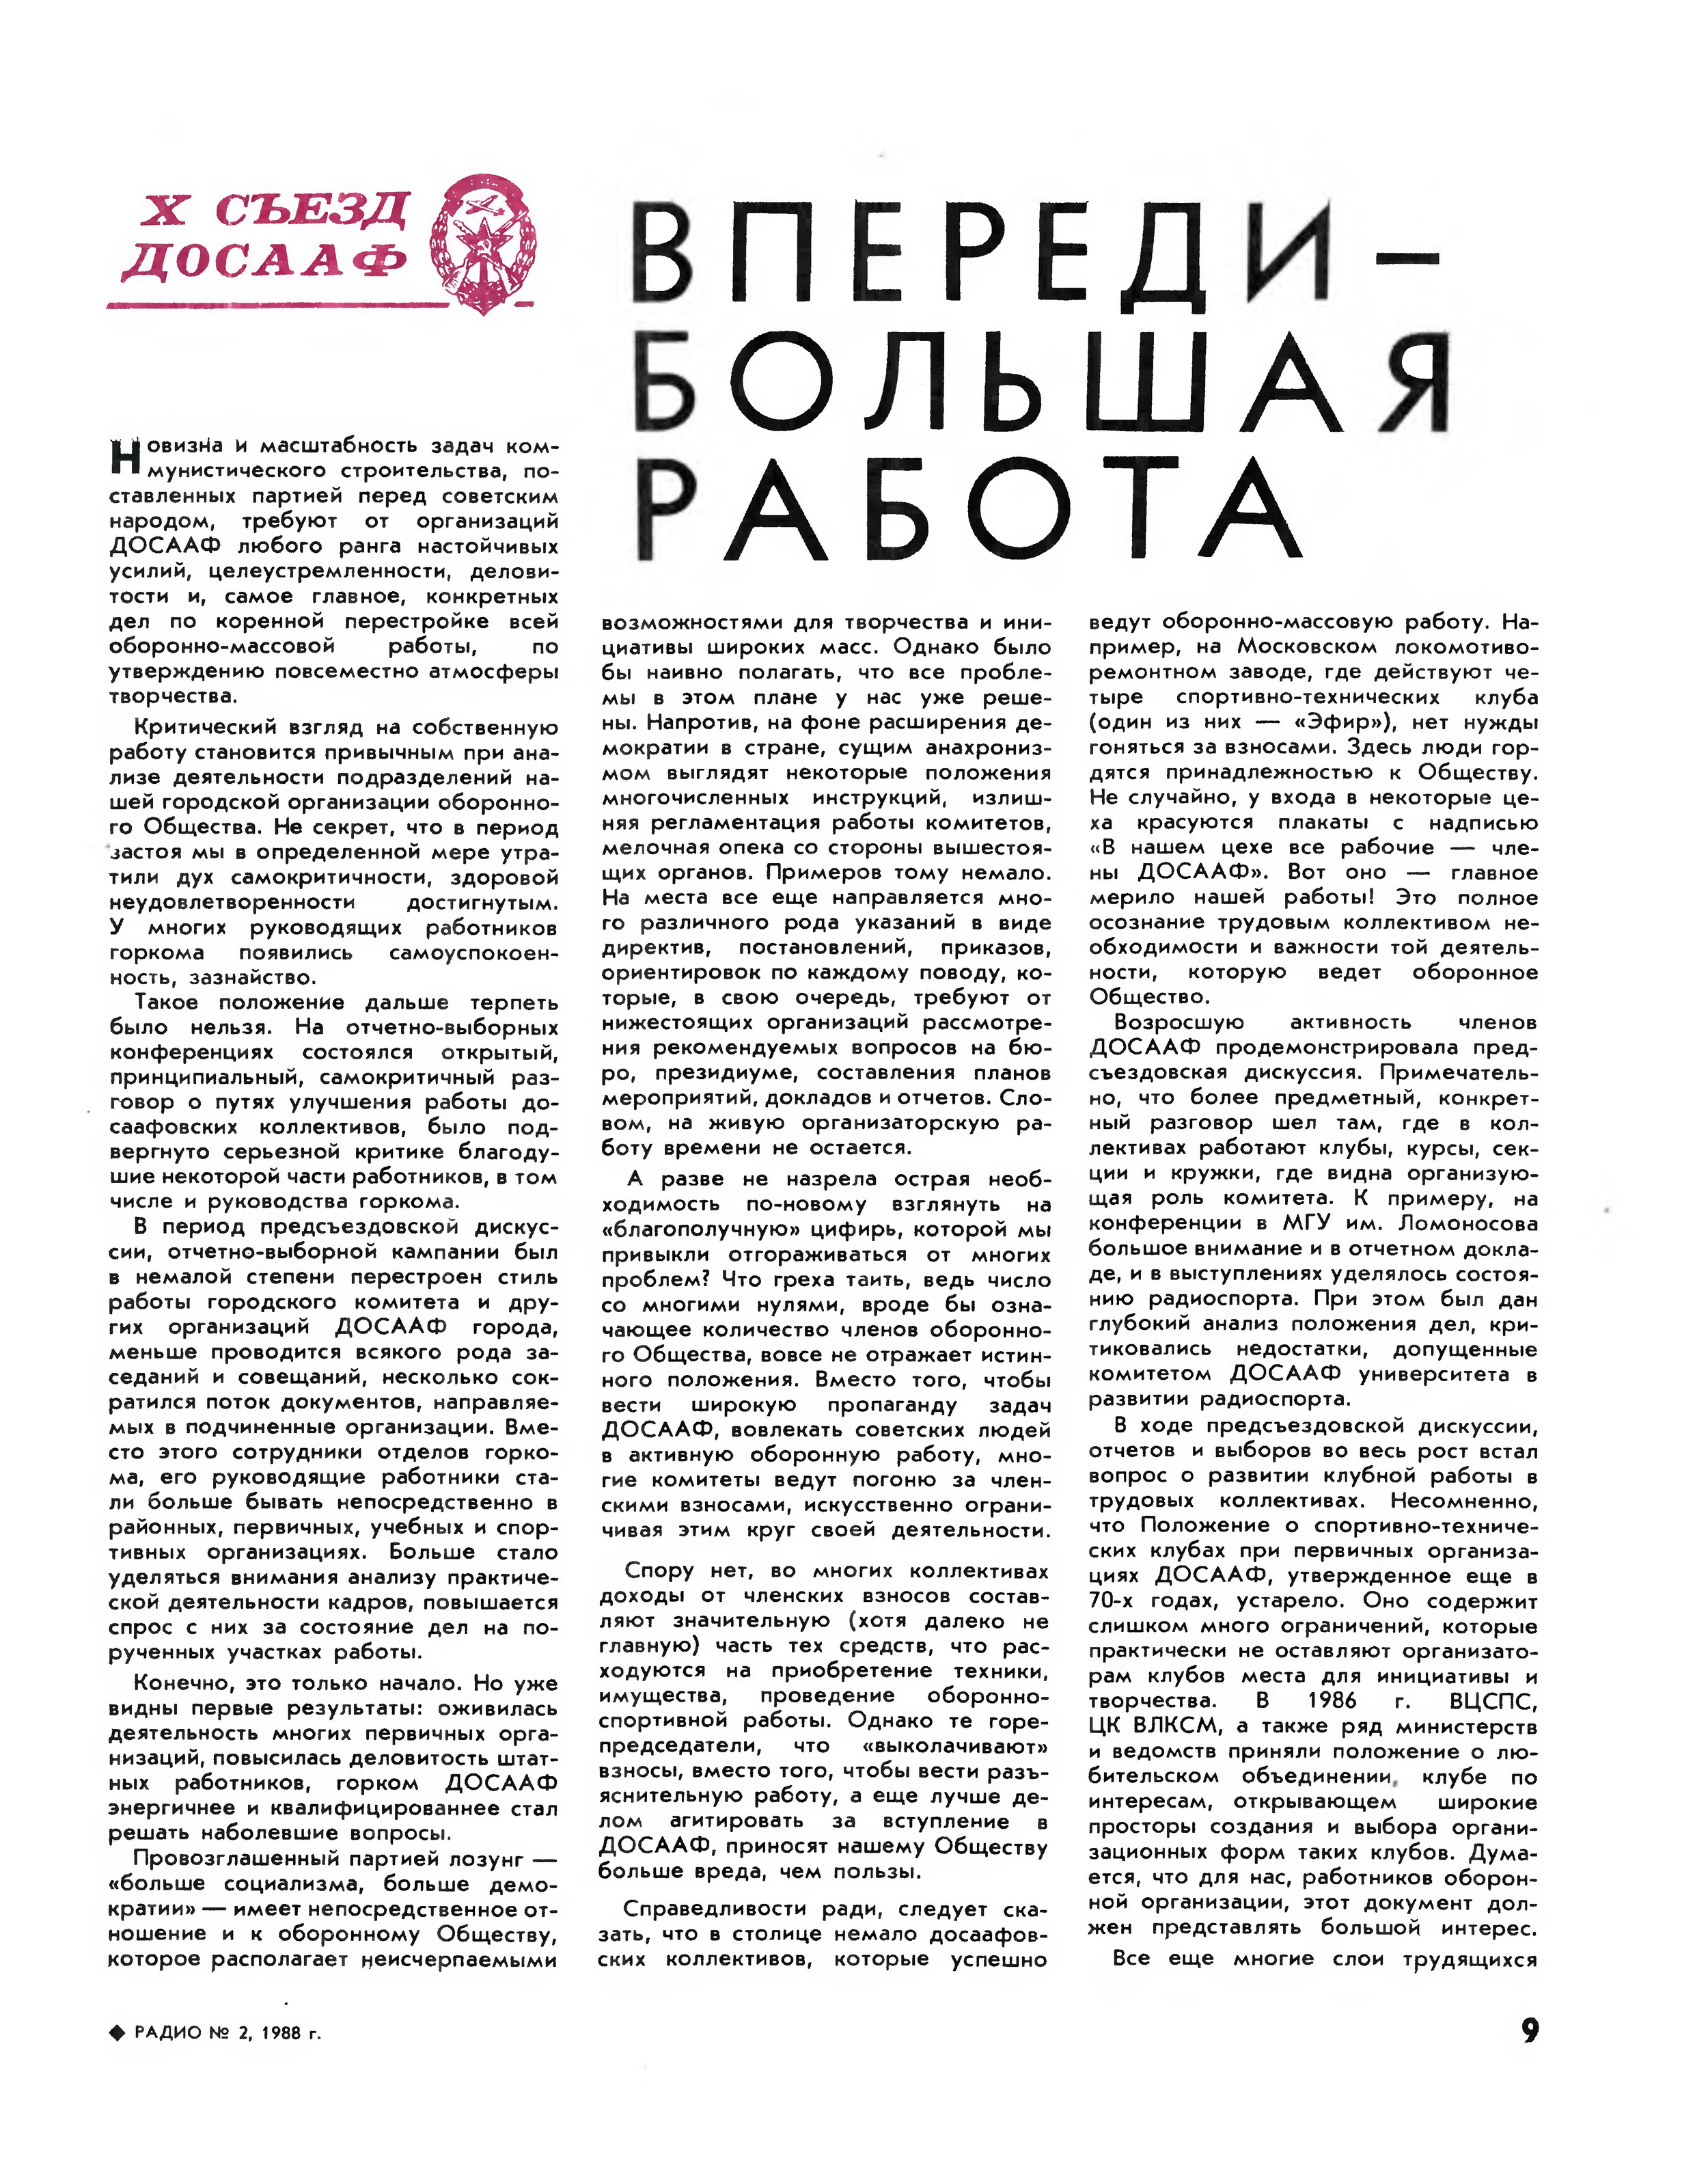 Стр. 9 журнала «Радио» № 2 за 1988 год (крупно)